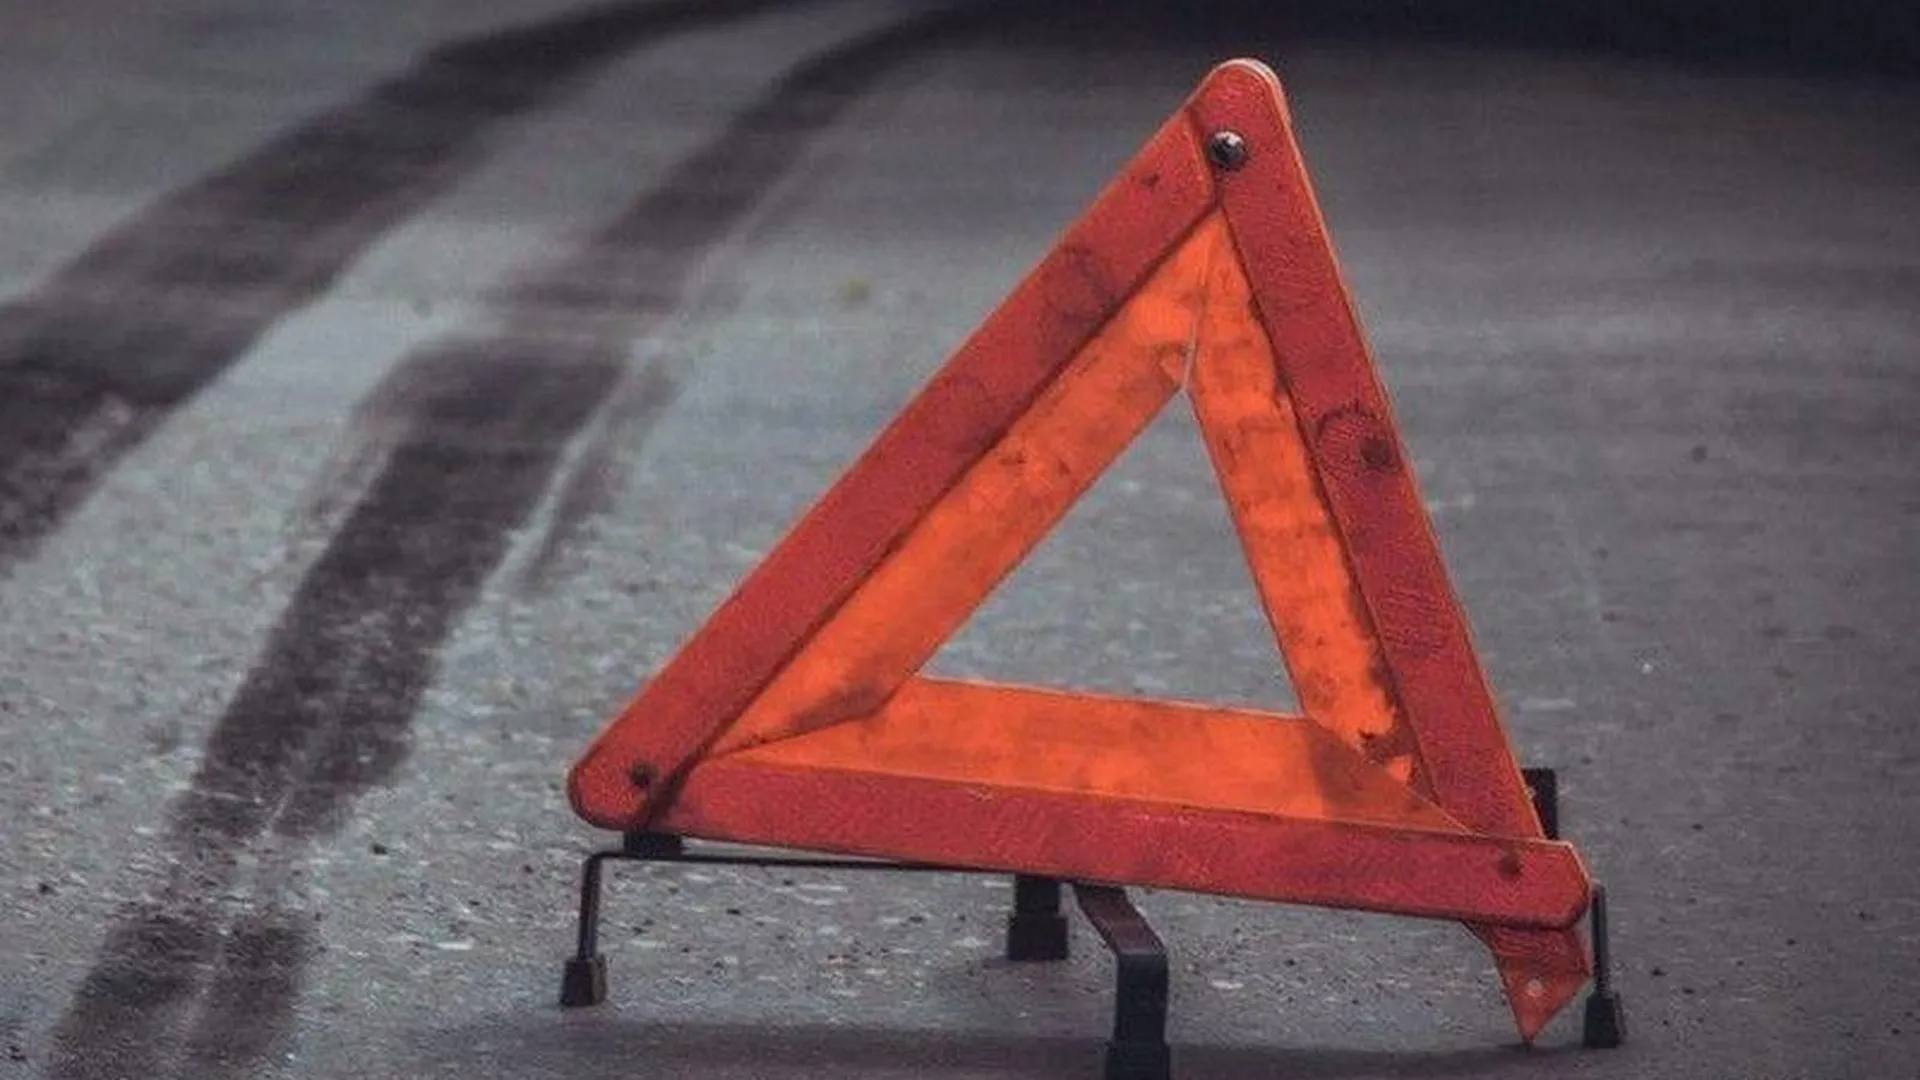 Шесть человек пострадали в результате ДТП в Орехово-Зуево